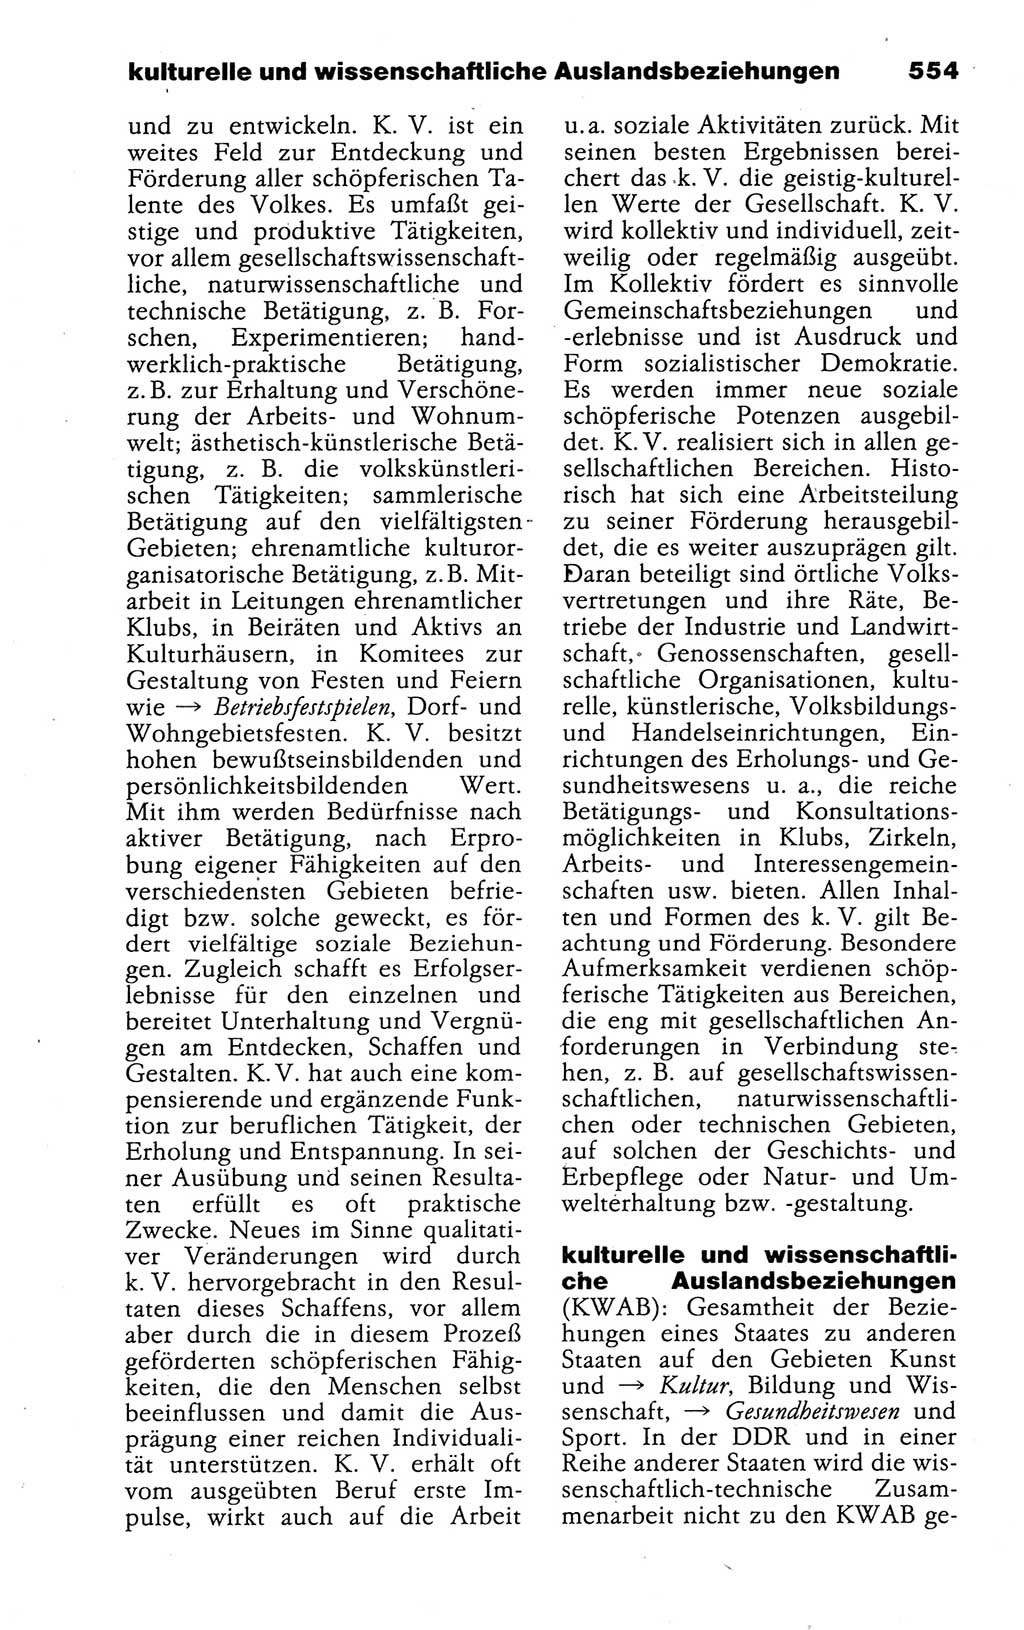 Kleines politisches Wörterbuch [Deutsche Demokratische Republik (DDR)] 1988, Seite 554 (Kl. pol. Wb. DDR 1988, S. 554)